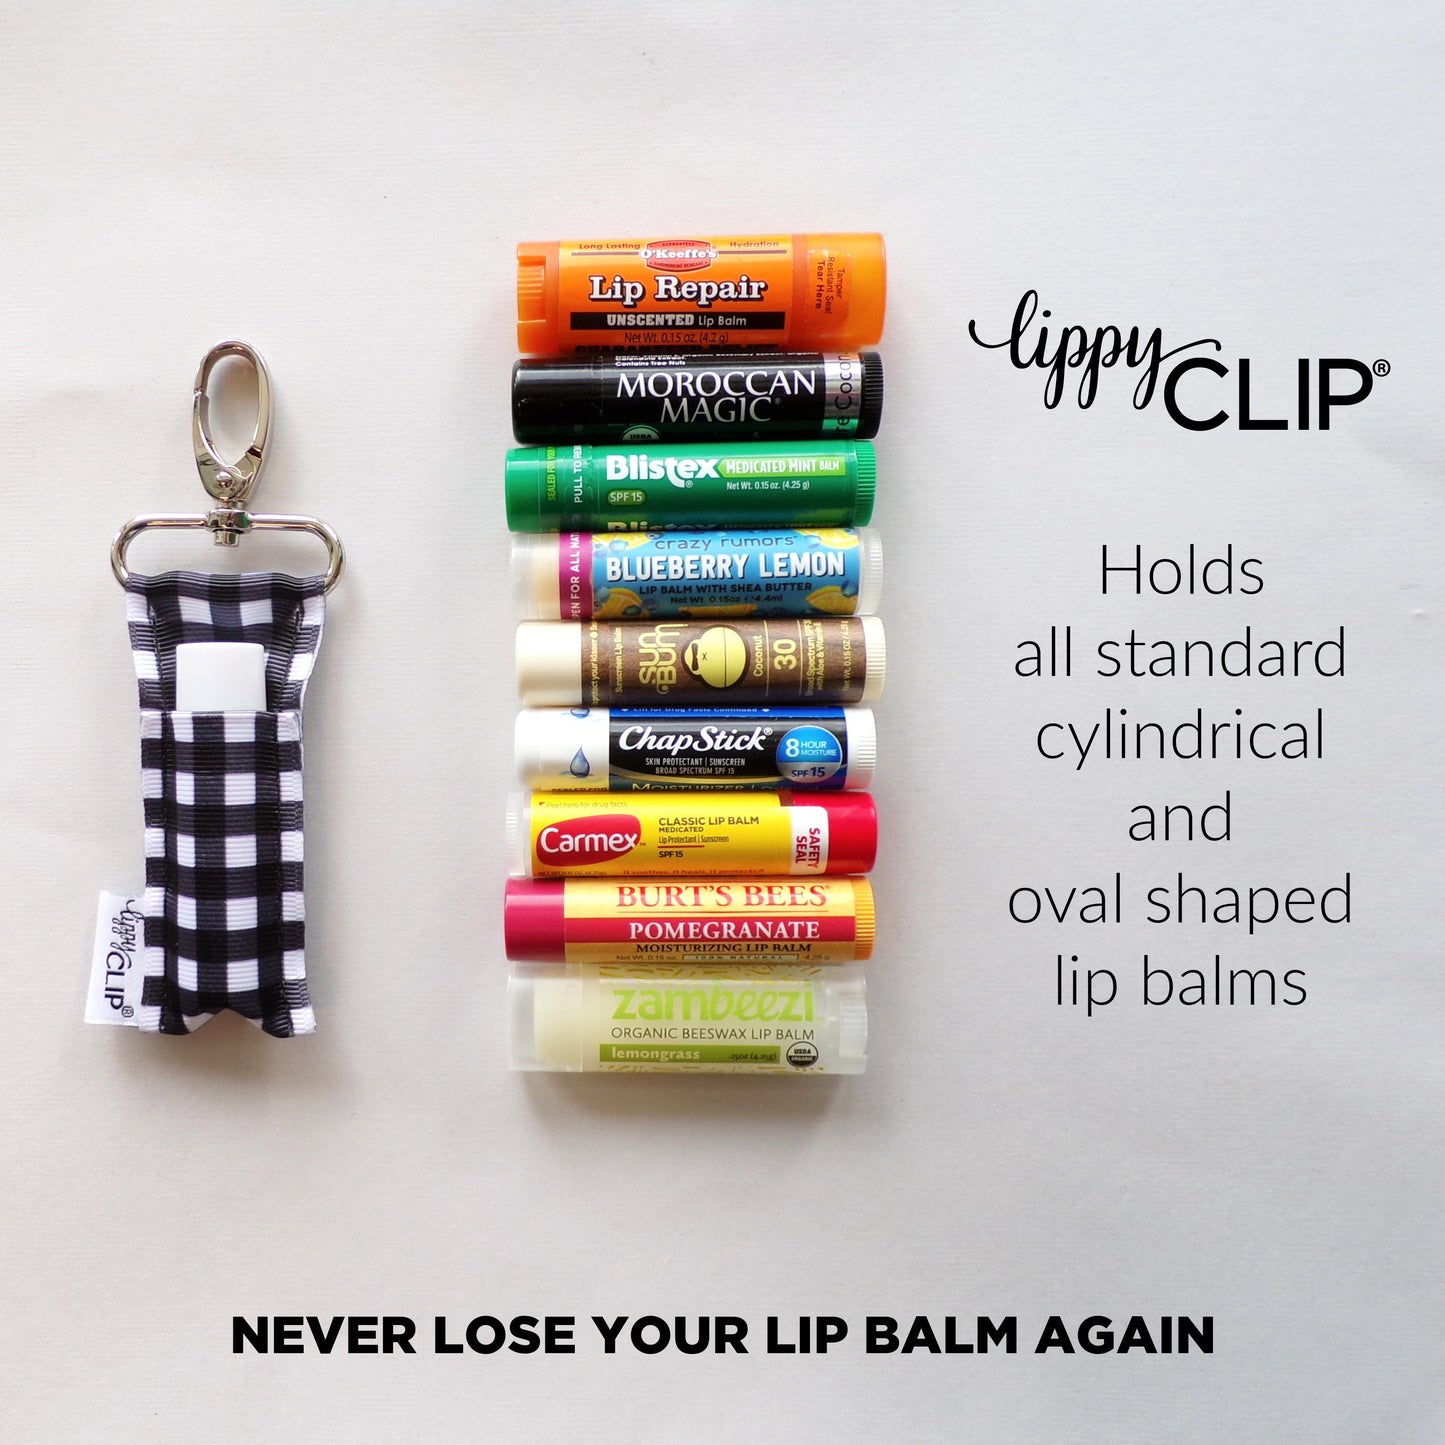 Frenchie LippyClip® Lip Balm Holder